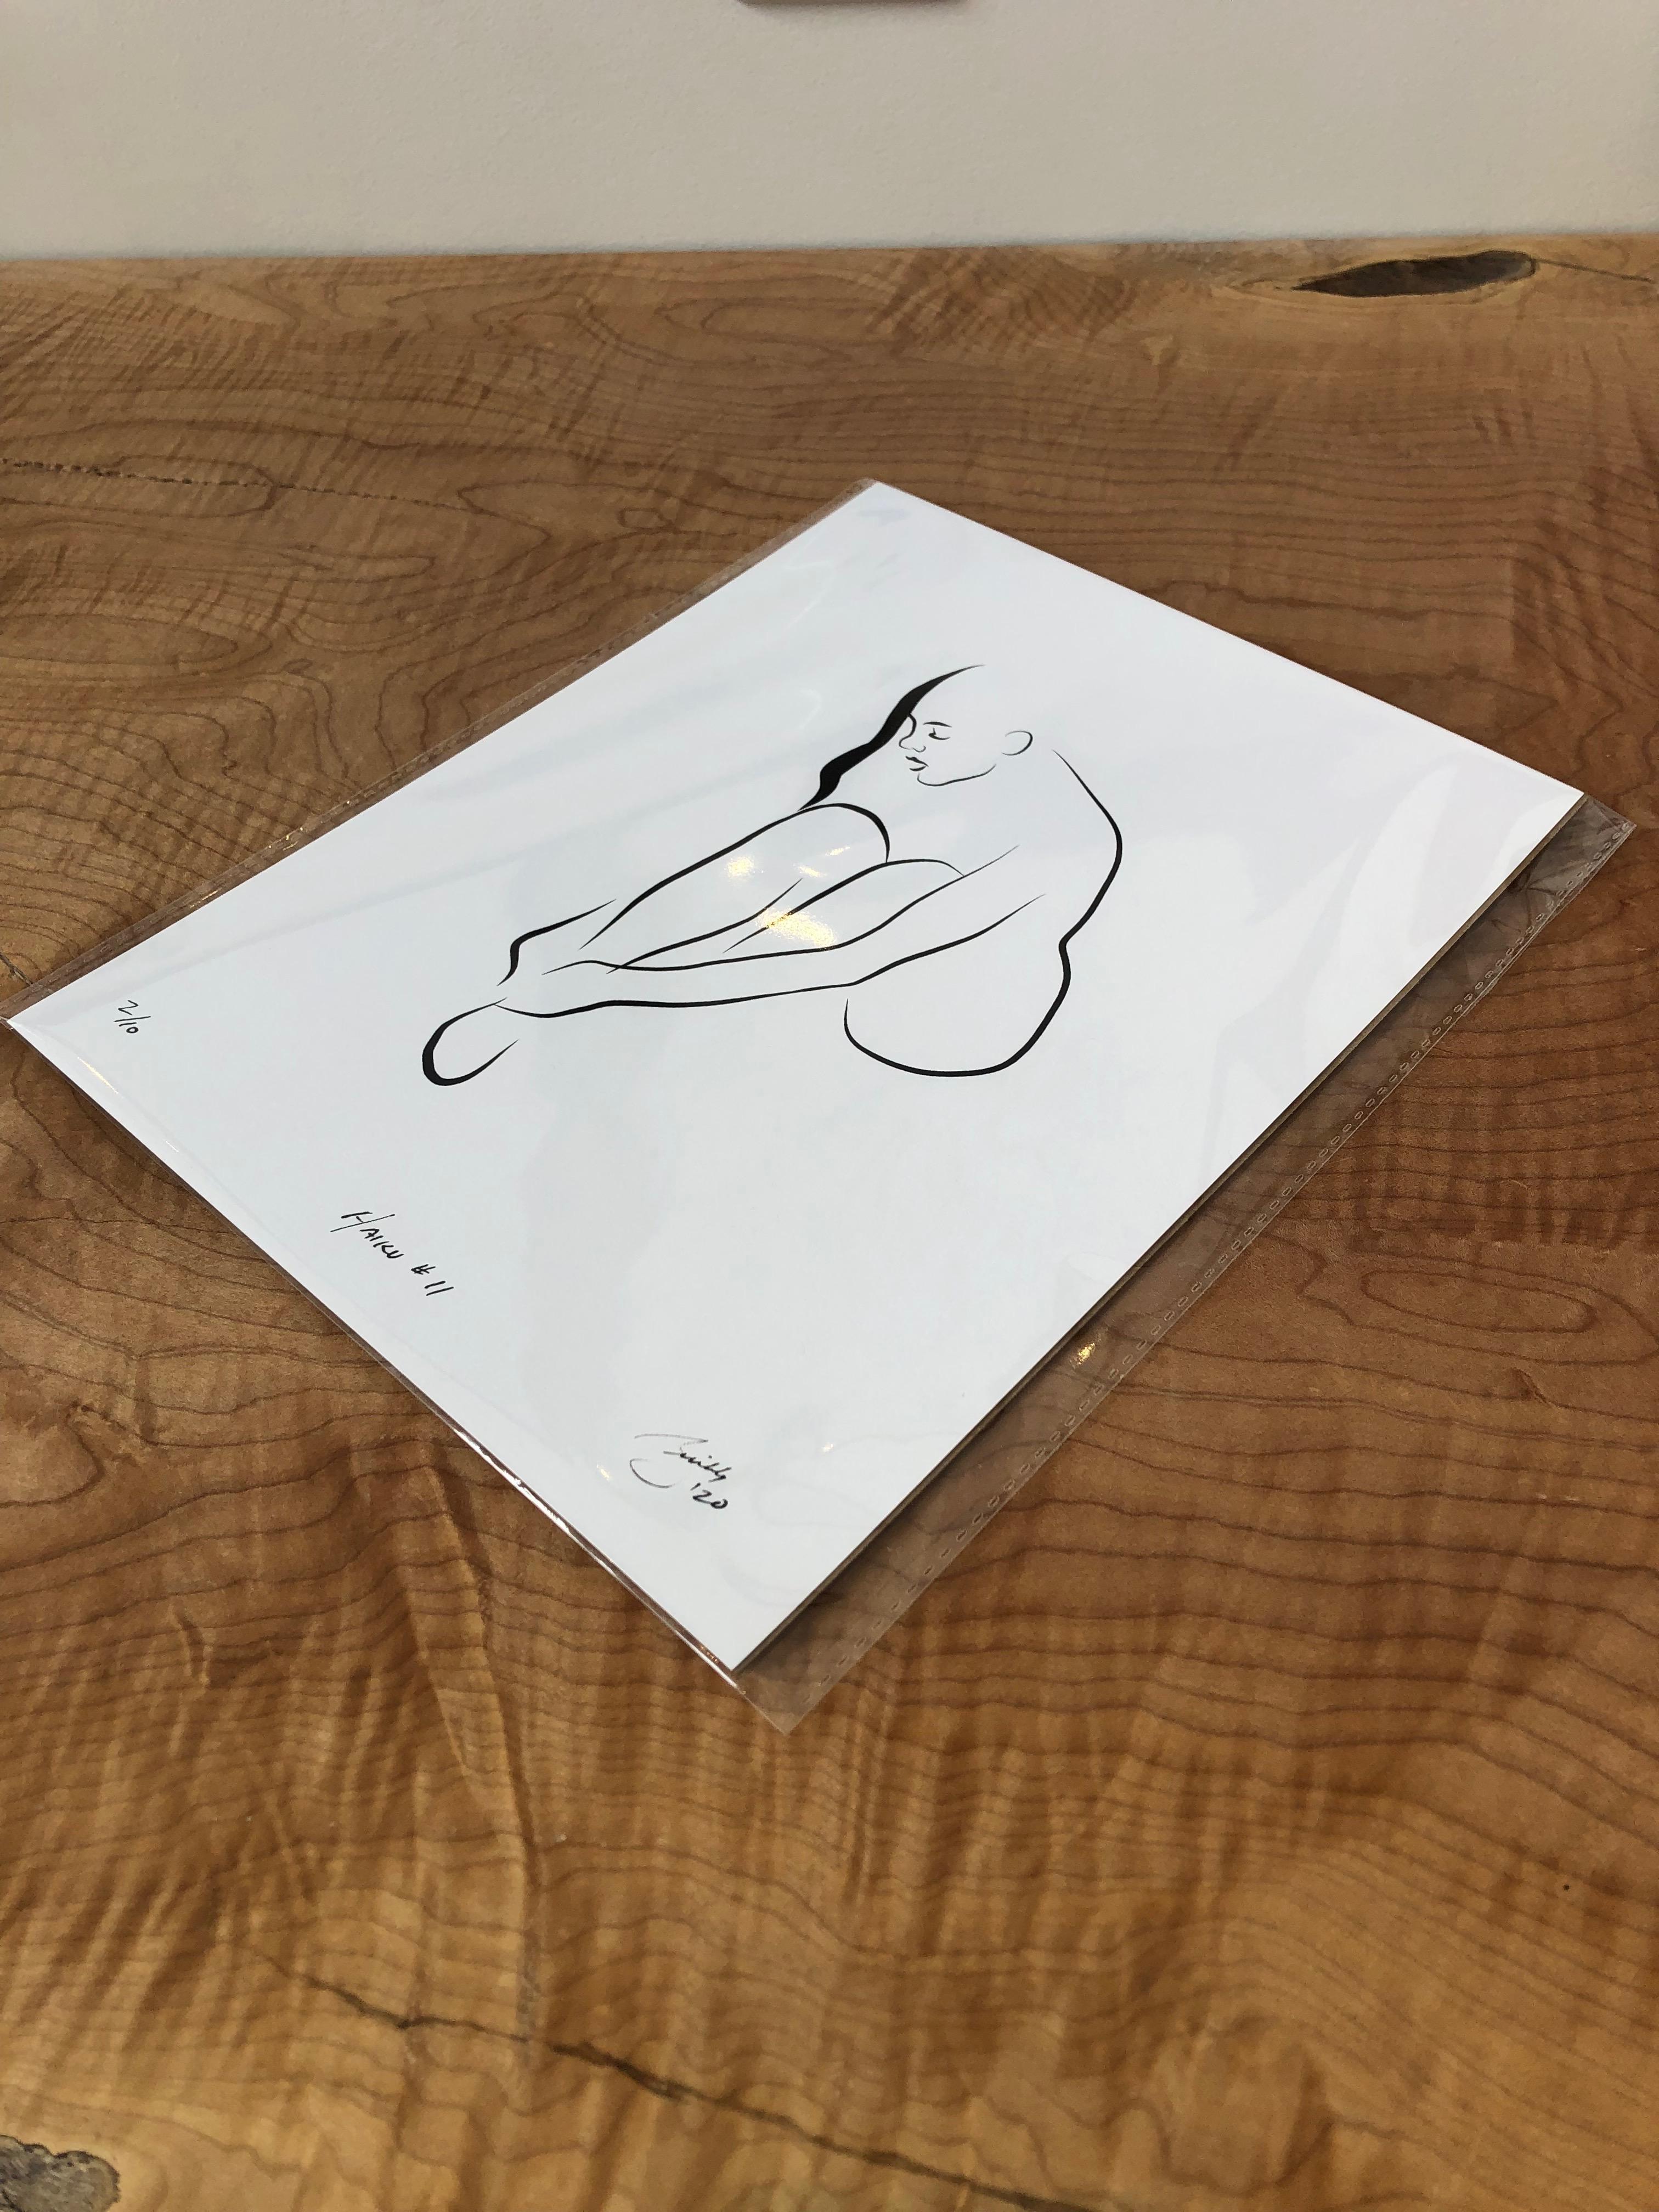 Haiku #11   - Digital Vector Drawing Female Nude Woman Figure Buckling Shoe - Print by Michael Binkley